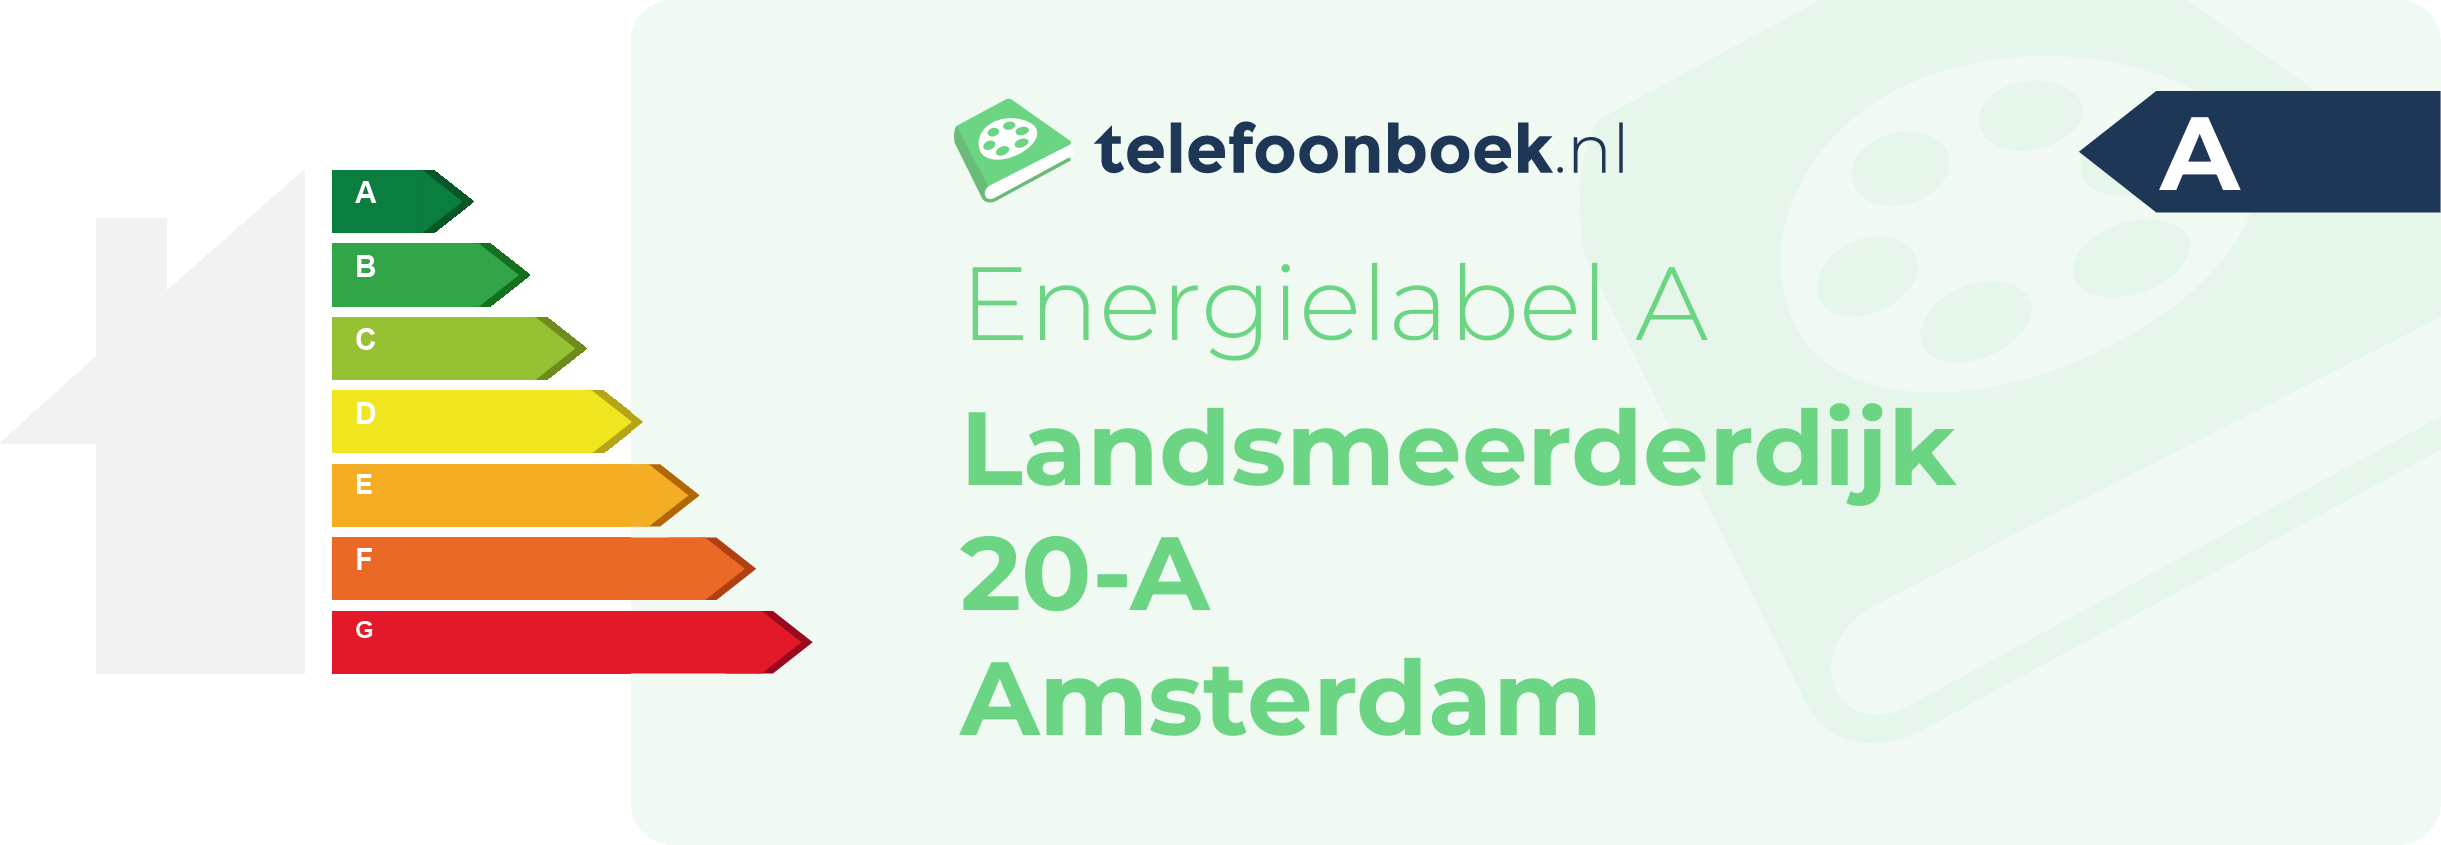 Energielabel Landsmeerderdijk 20-A Amsterdam